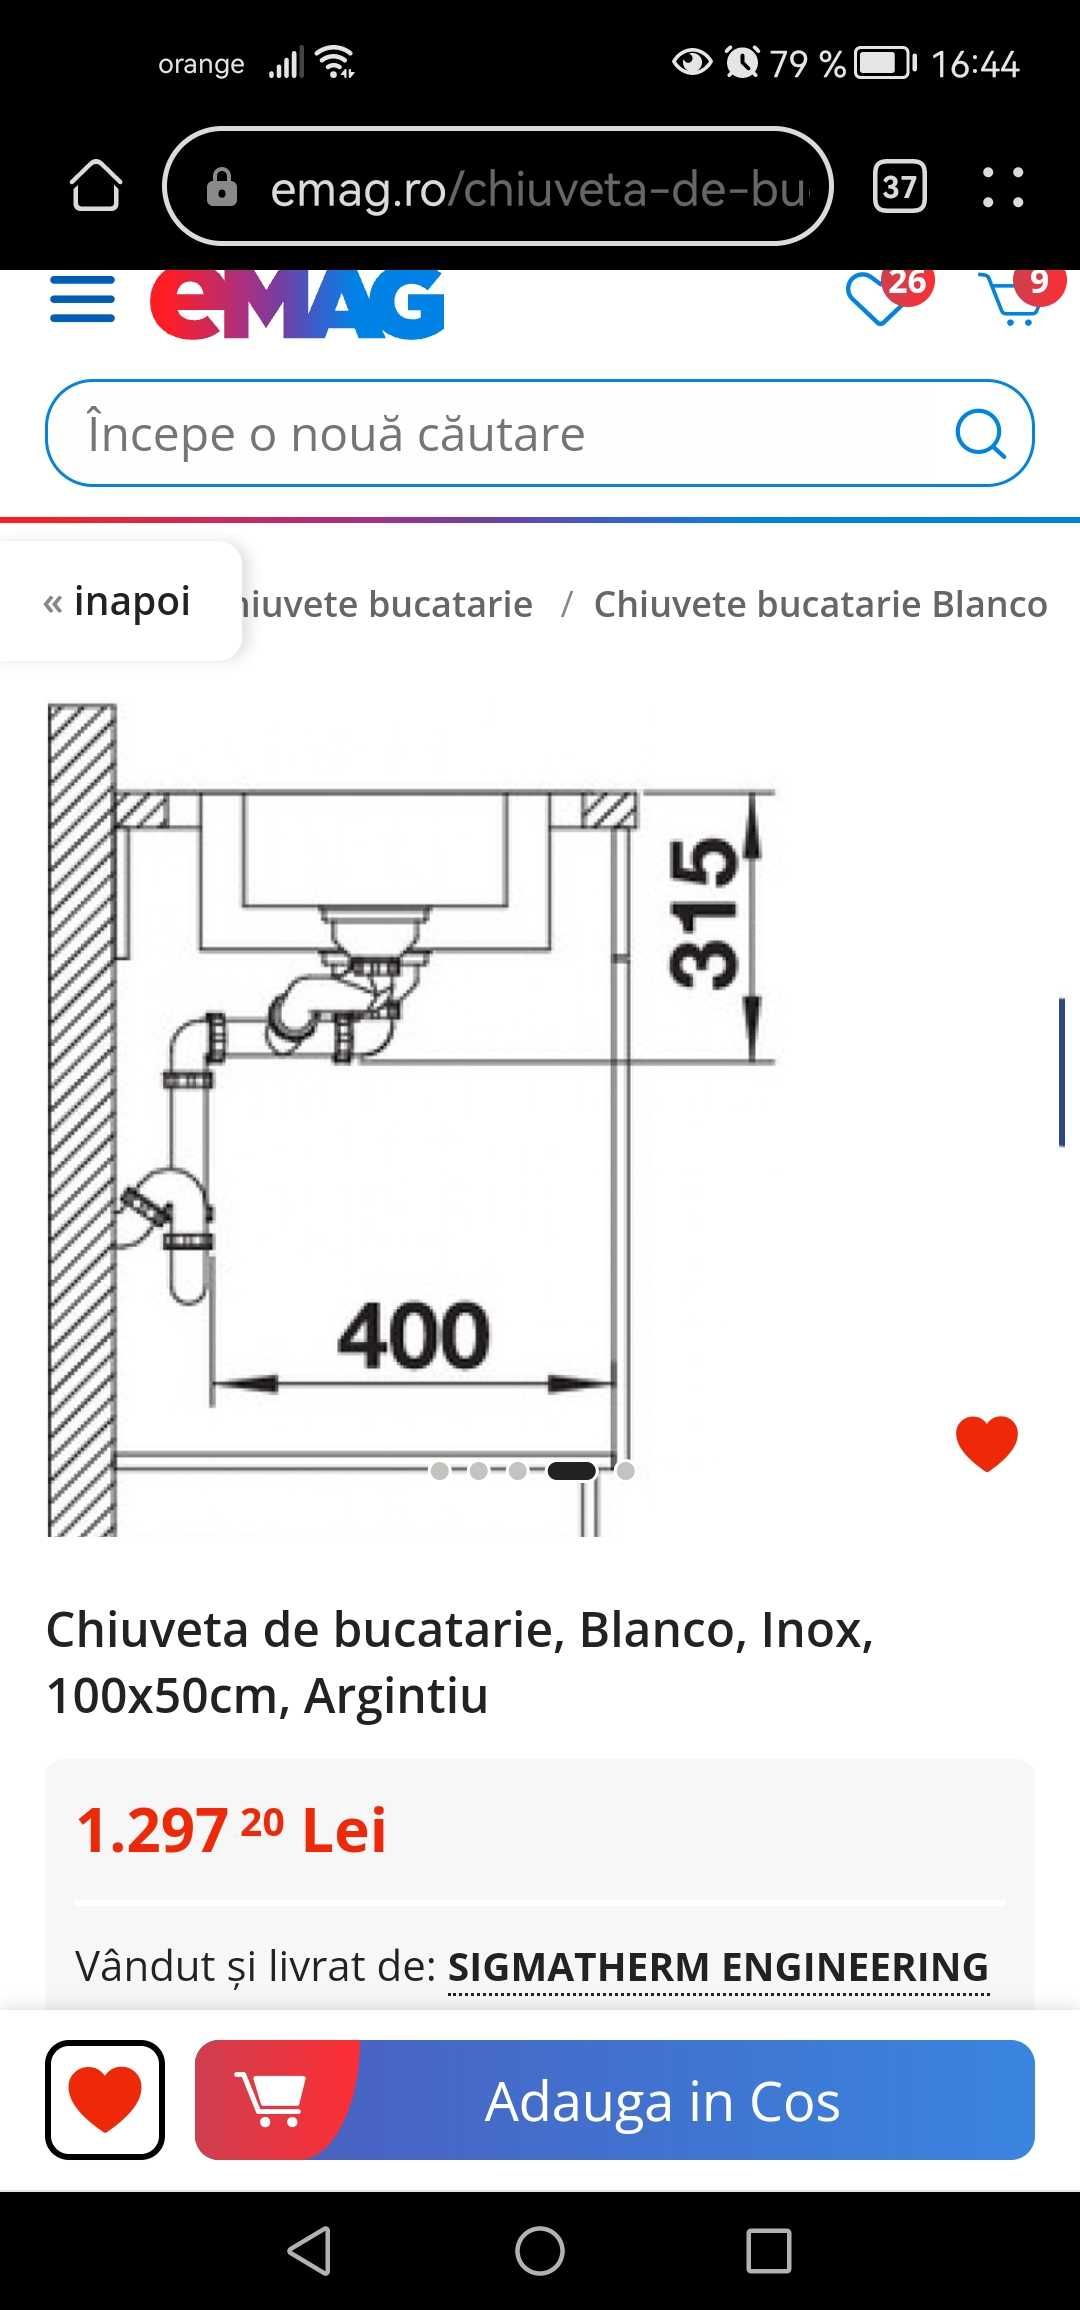 Chiuveta BLANCO premium 1,5cuve+ PICURATOR 100x50cm, pret Emag 1300lei